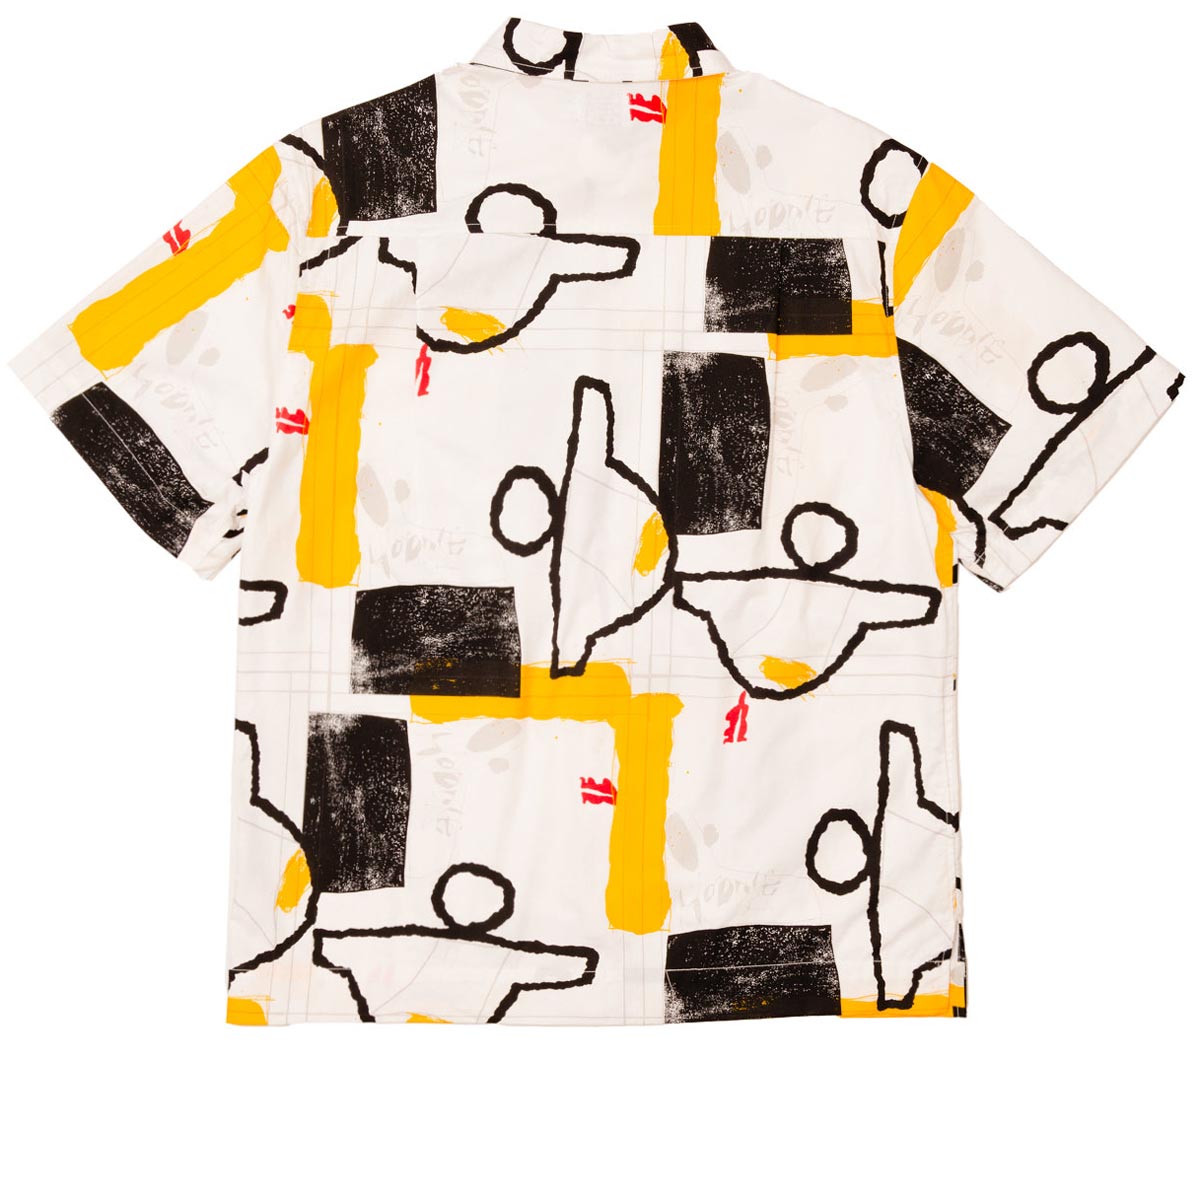 Hoddle Faire Shirt - Yellow/Black/White image 2